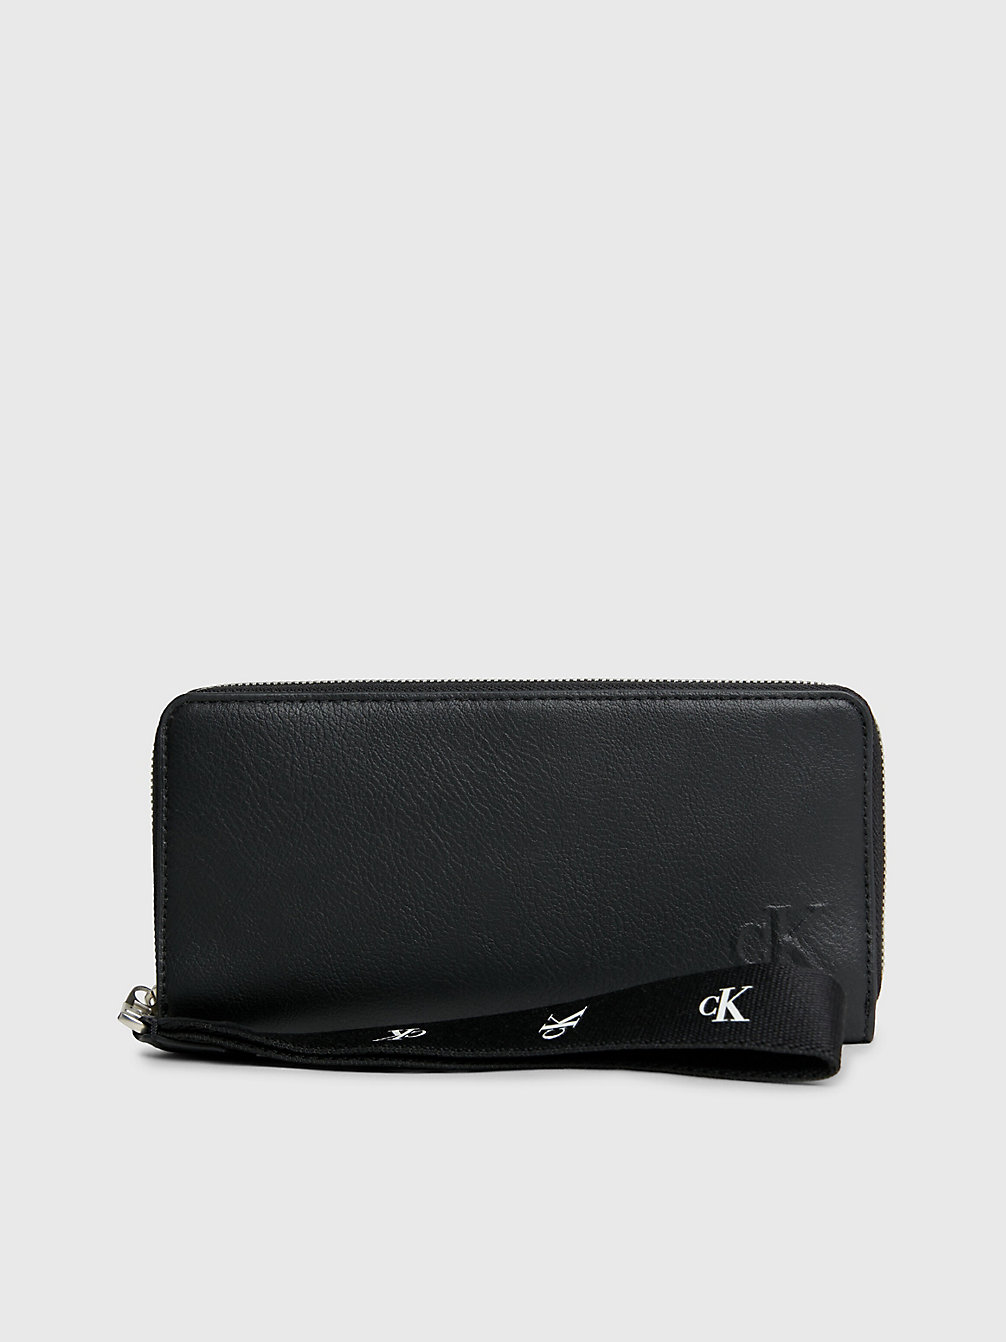 BLACK > Portemonnaie Mit Rundum-Reißverschluss Aus Recyceltem Material > undefined Damen - Calvin Klein